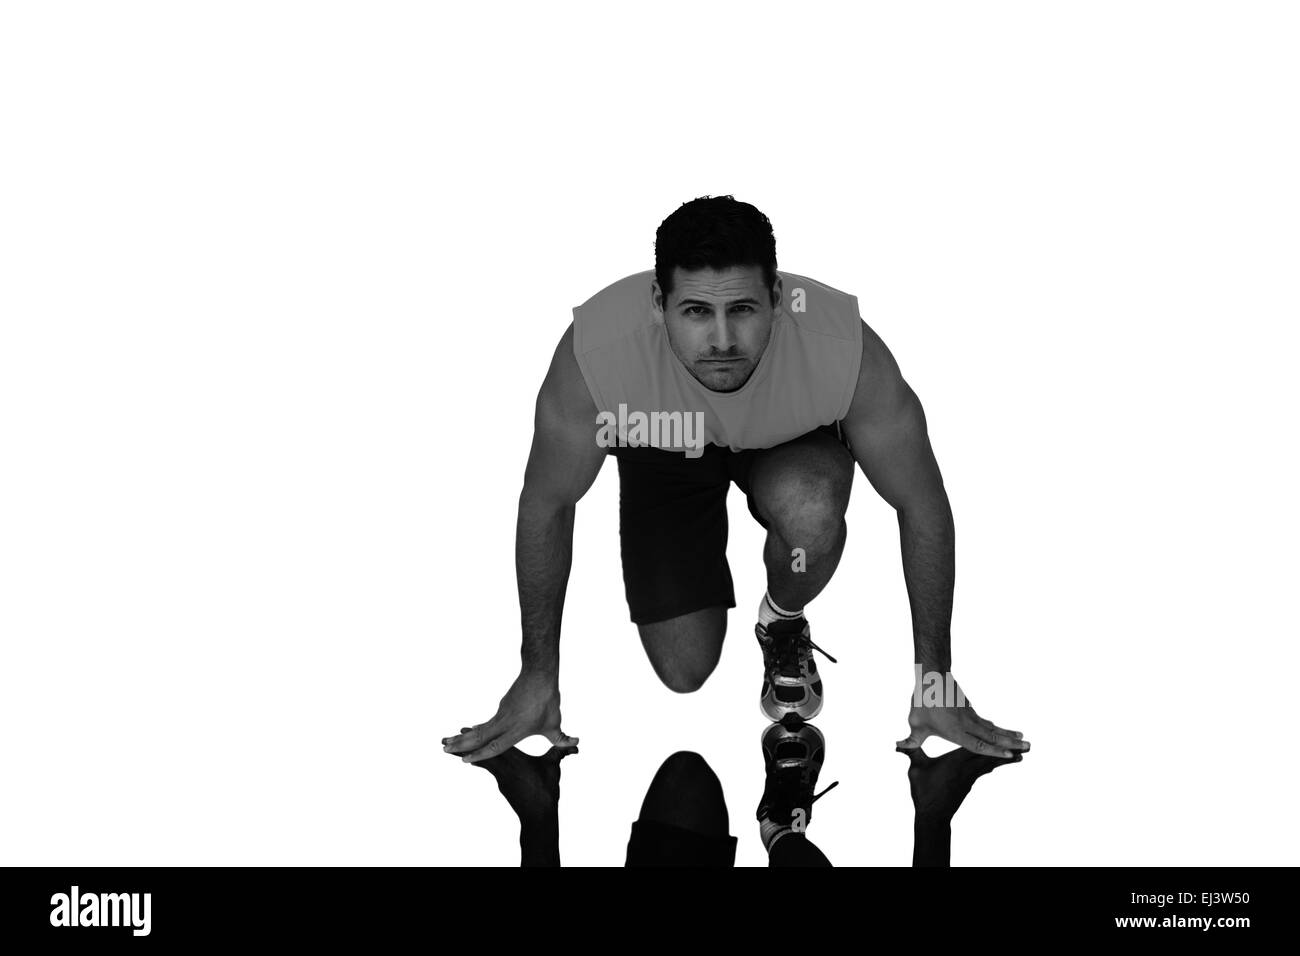 Zusammengesetztes Bild Porträt eines jungen sportlichen Mannes im laufenden Haltung Stockfoto